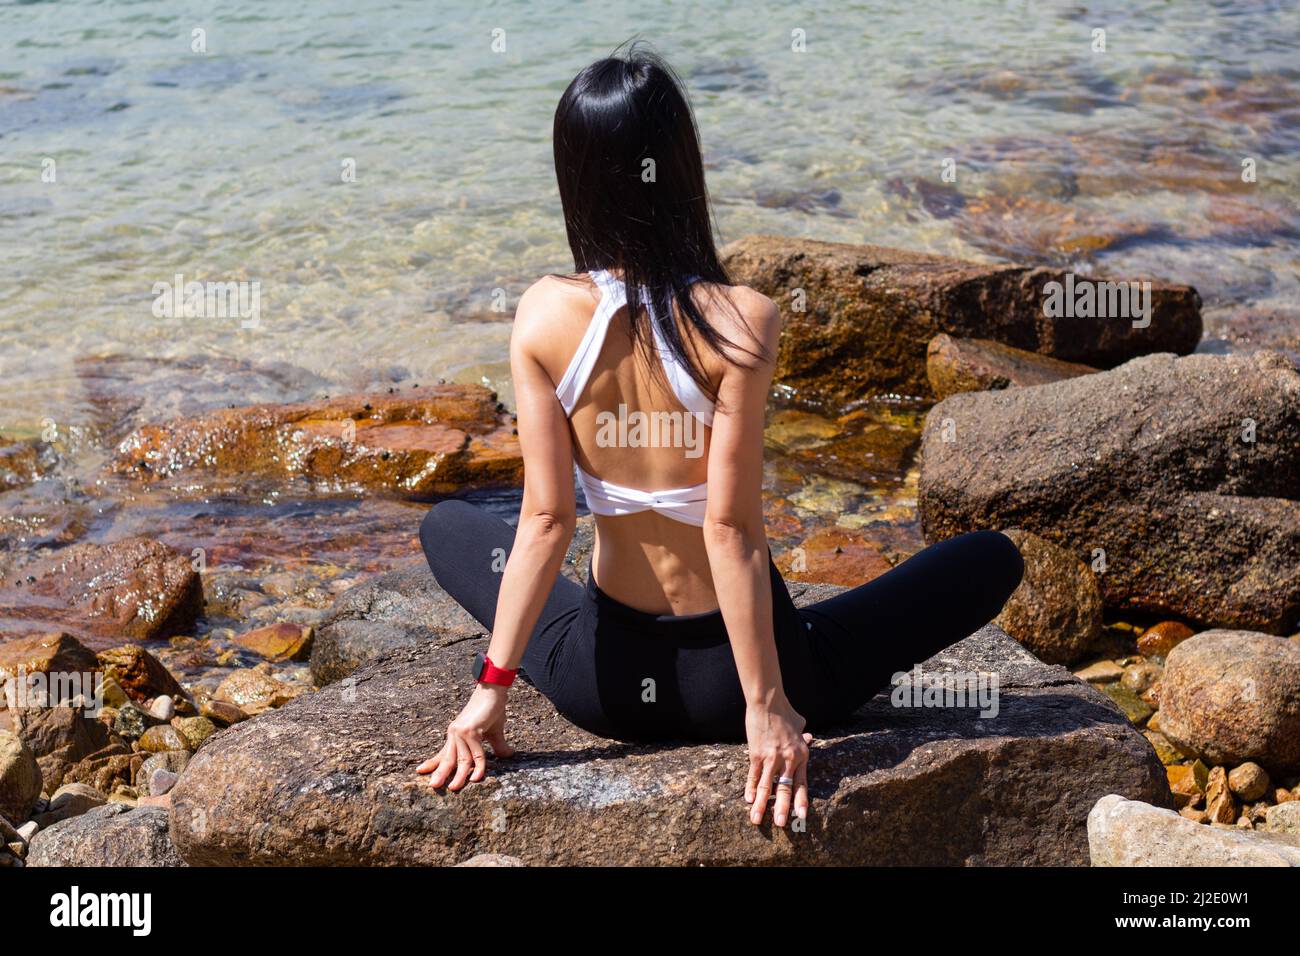 Une femme mince avec de longs cheveux noirs portant des vêtements de sport noirs et blancs est assise à pattes croisées sur des rochers surplombant la mer Banque D'Images